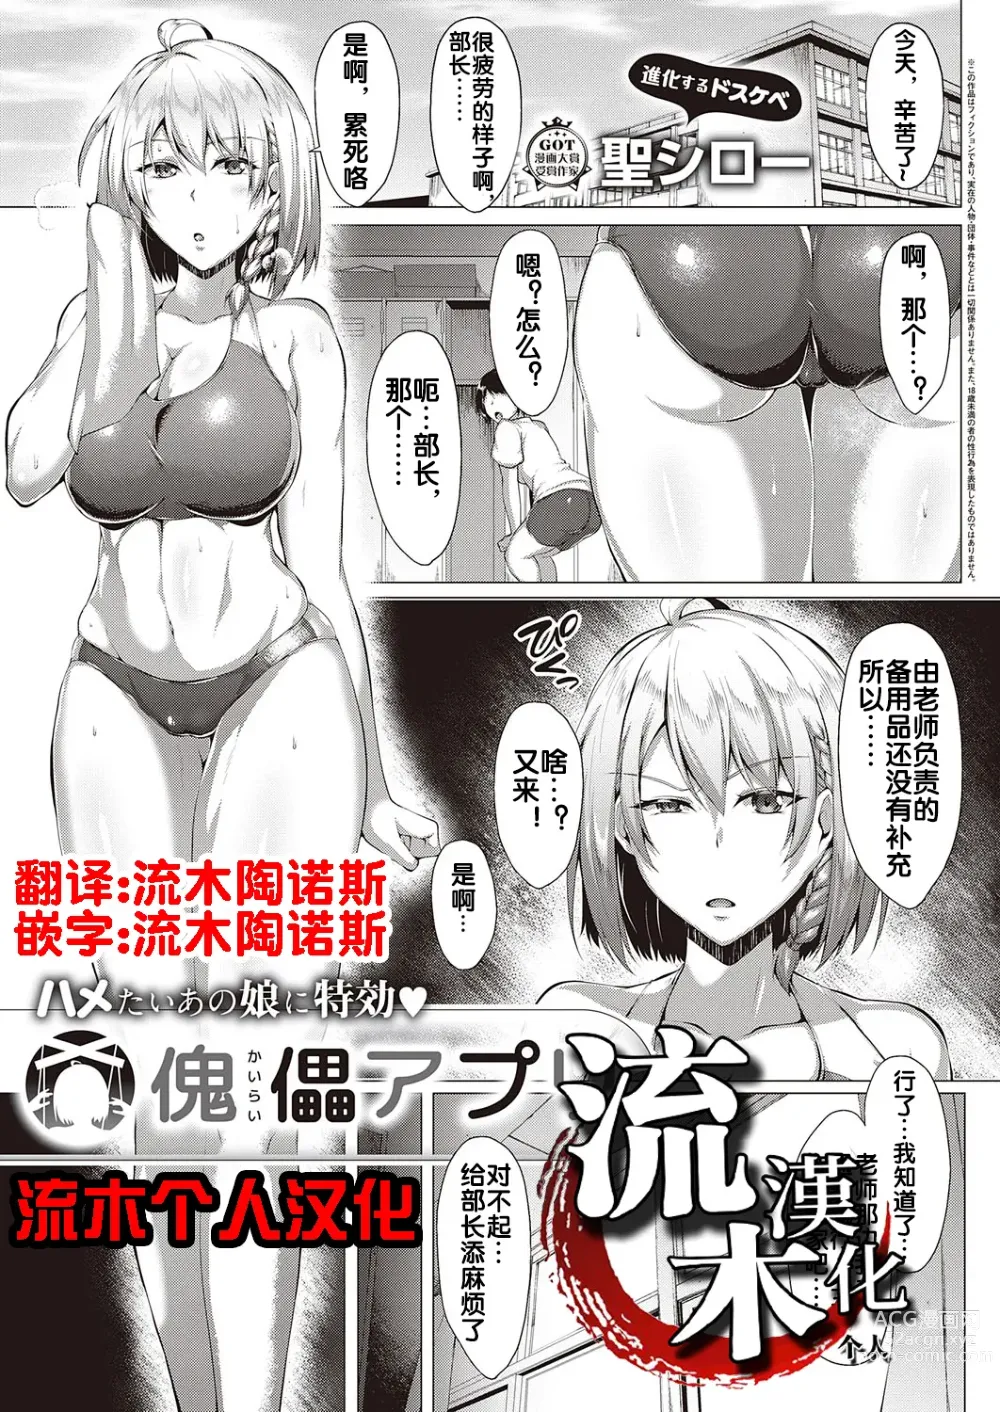 Page 1 of manga Kugutsu Appli